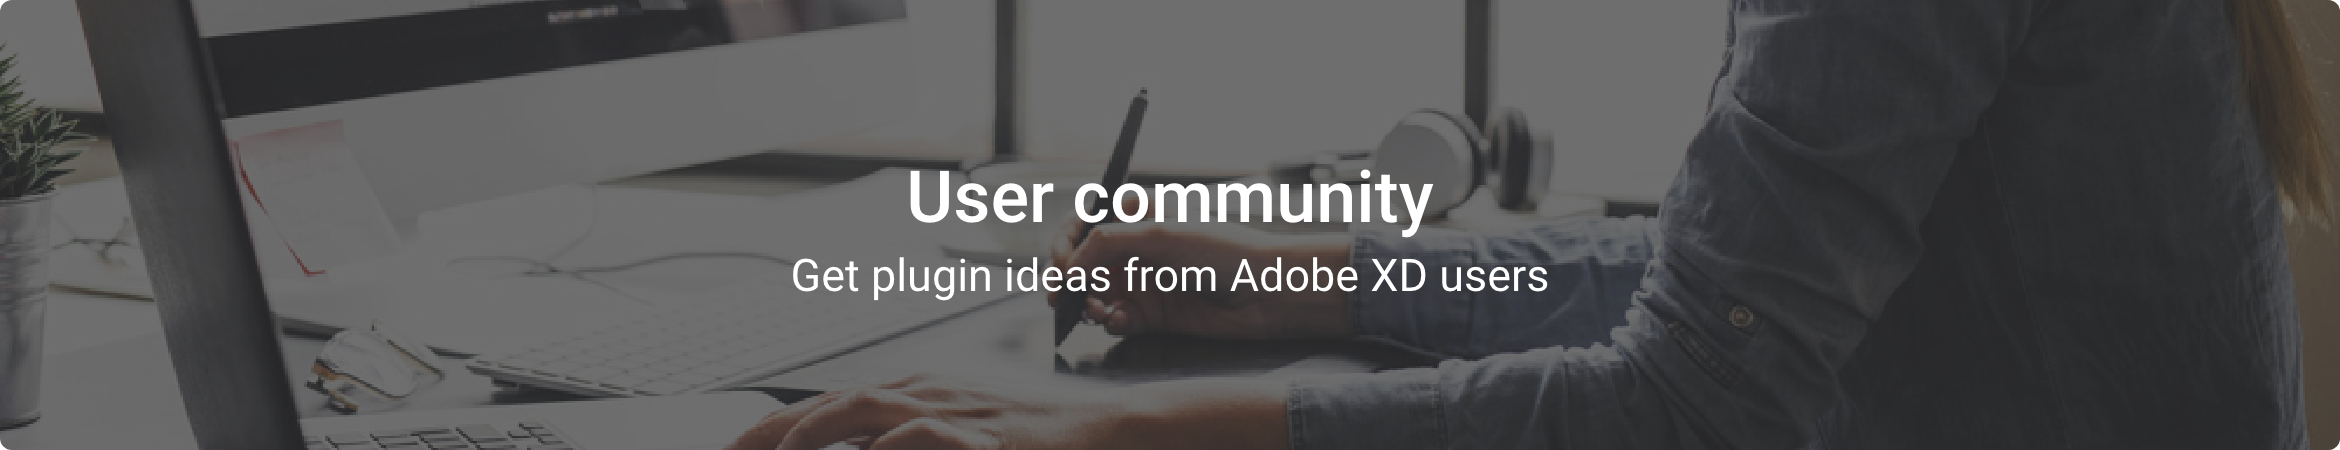 Adobe XD user community